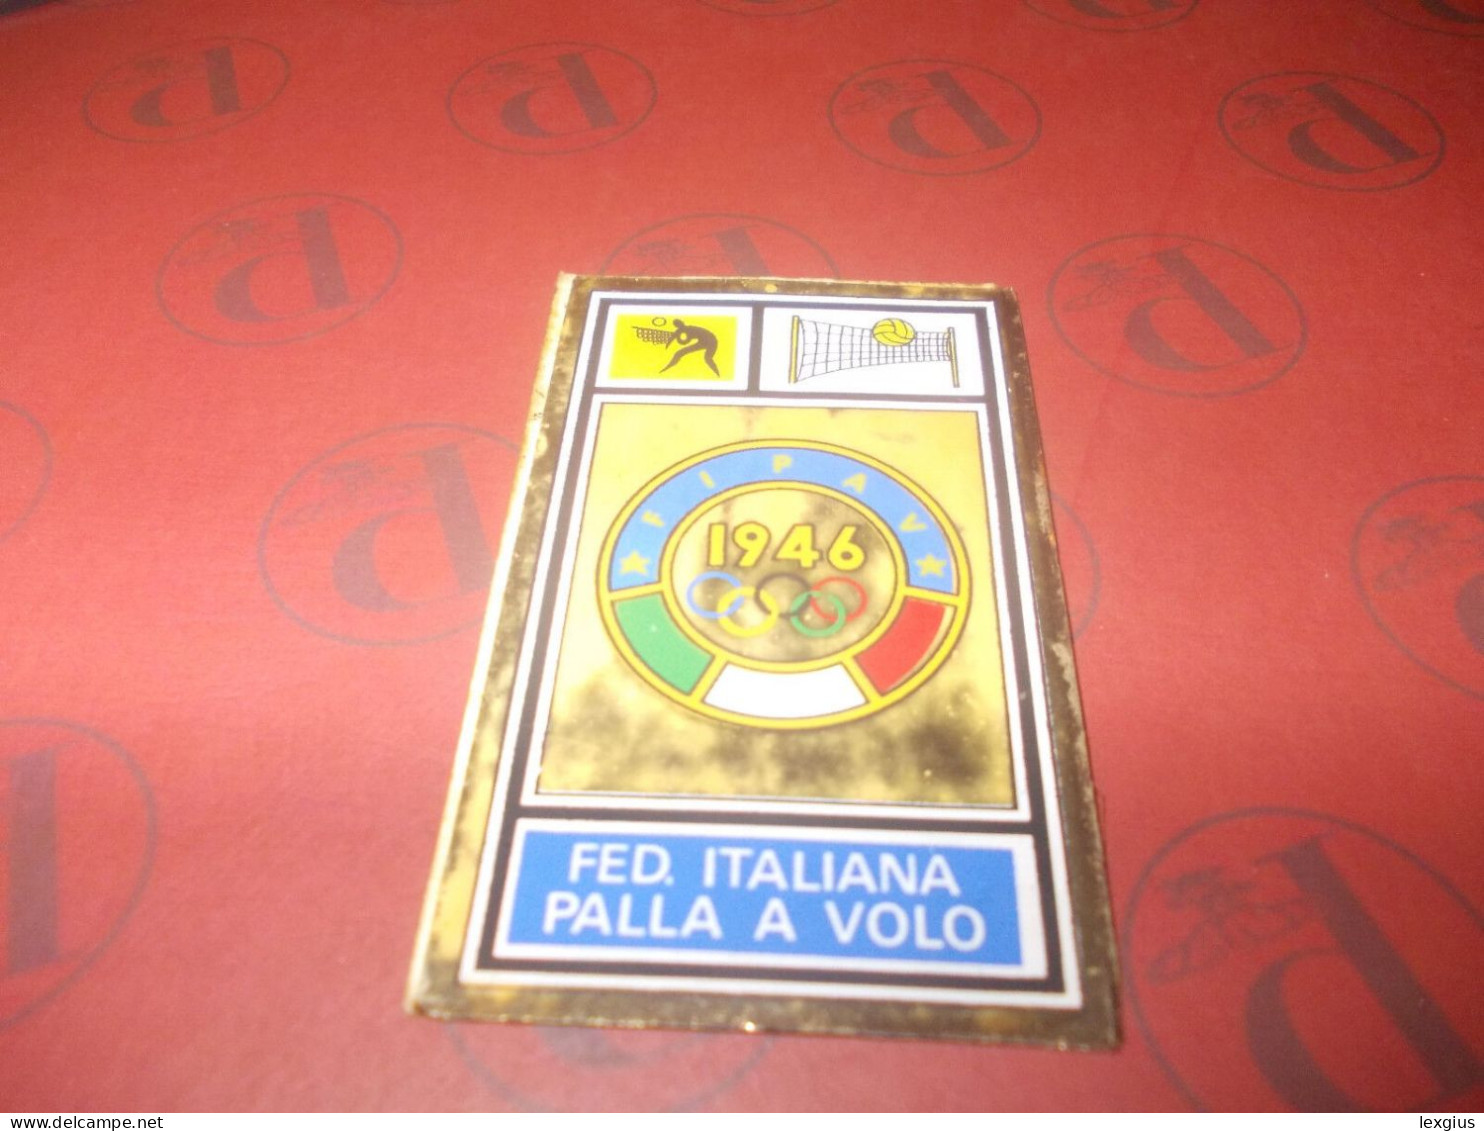 Scudetto PALLAVOLO FIPAV Nuovo + 9 VELINE  Album Figurine CAMPIONI SPORT 1969/70 - Edizione Italiana